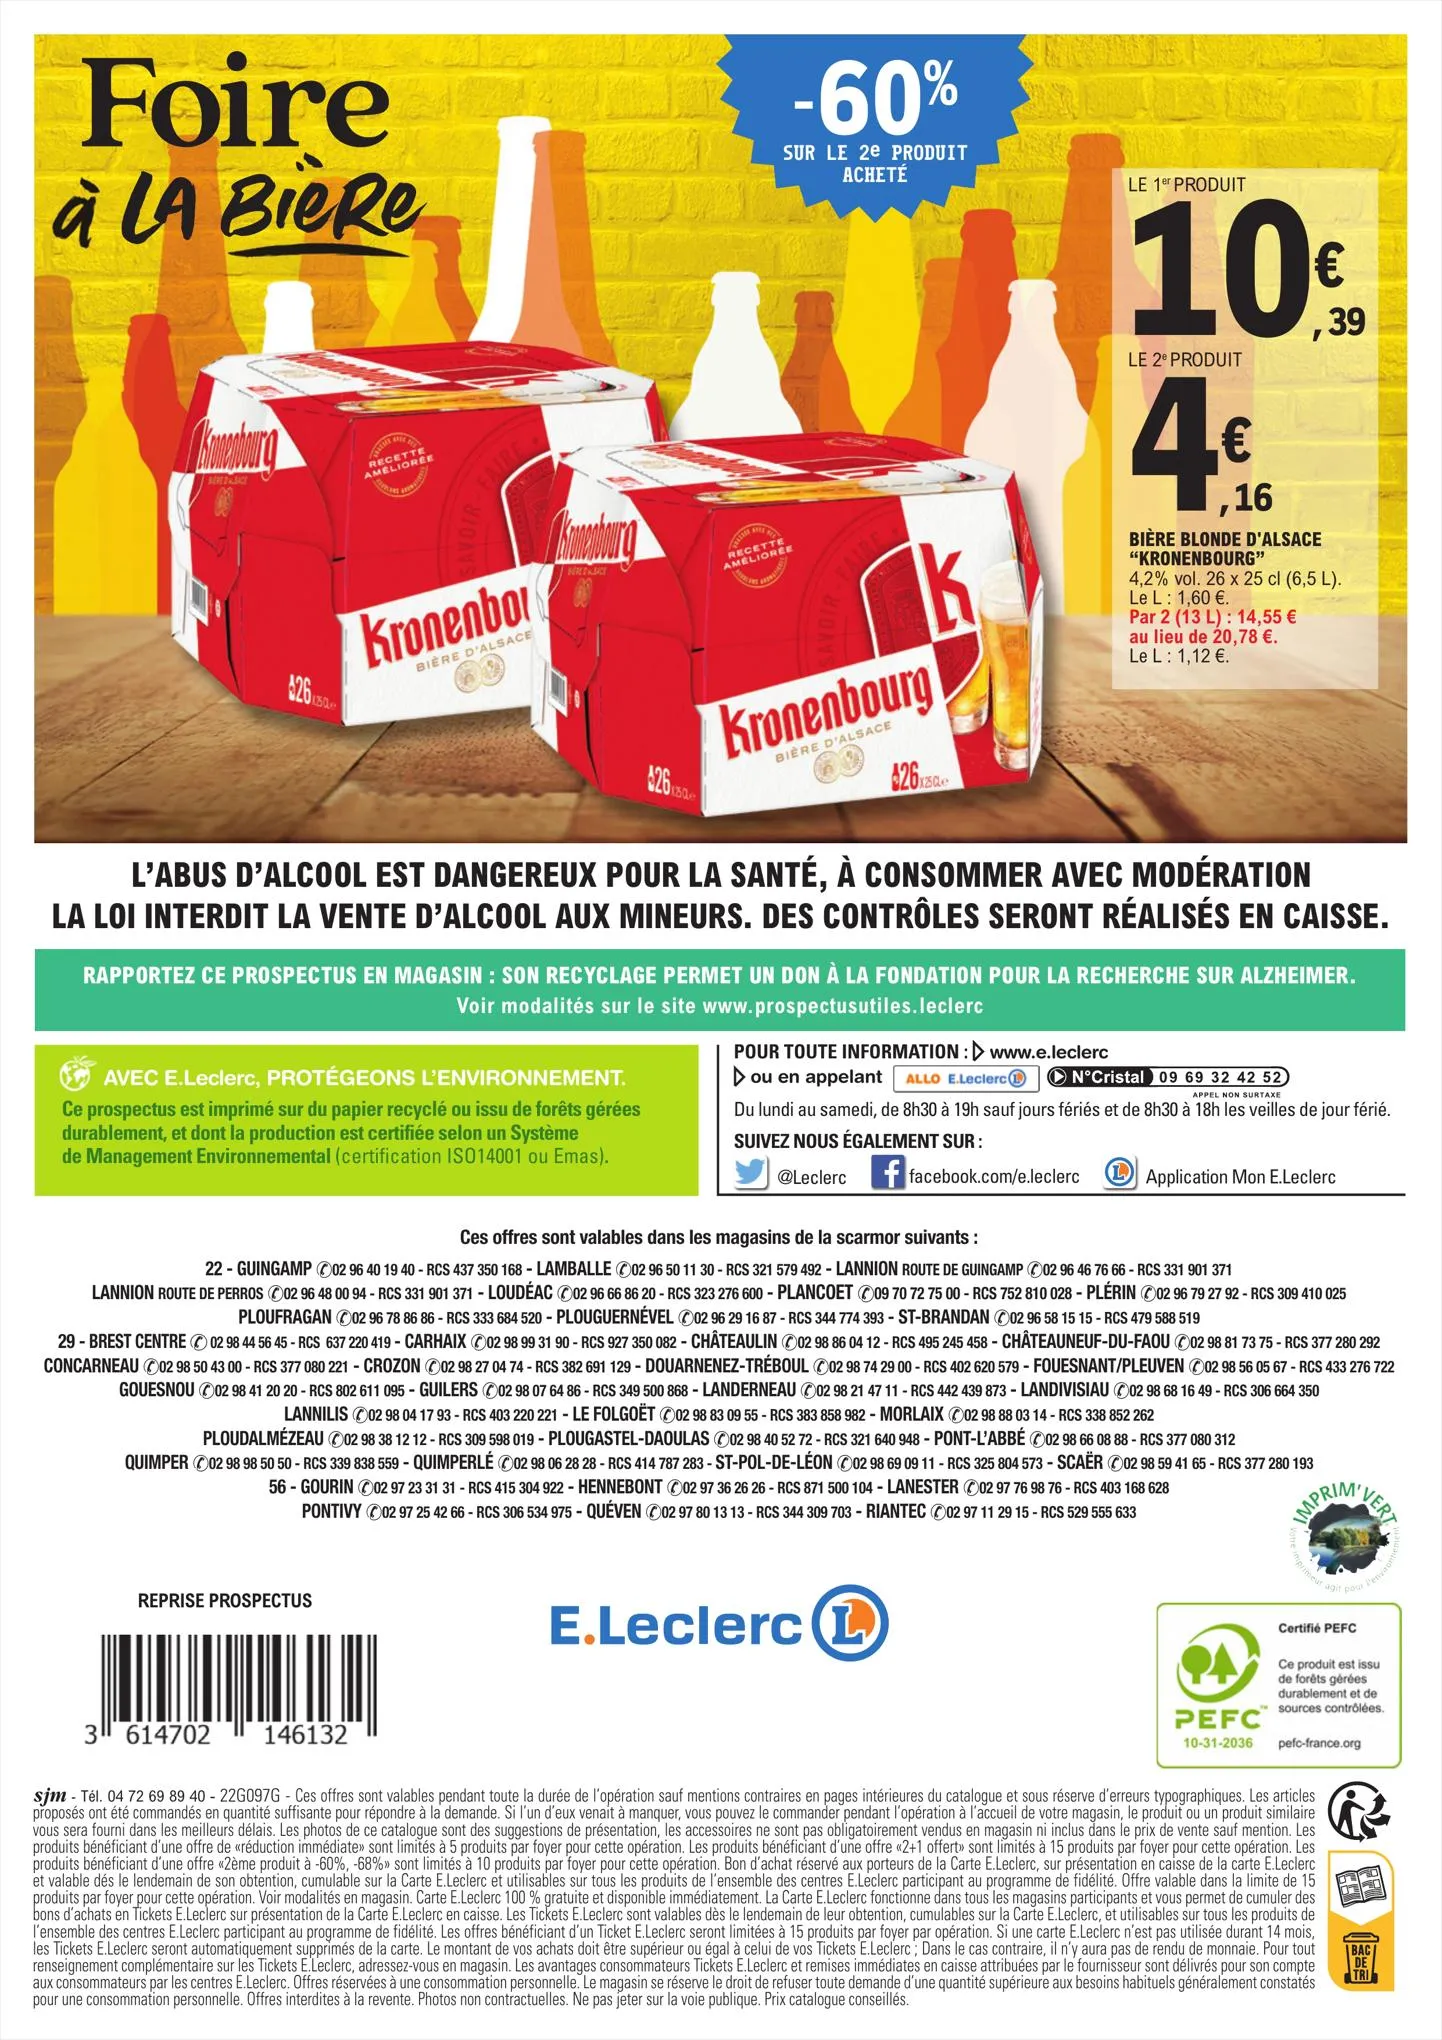 Catalogue Catalogue E.Leclerc, page 00008